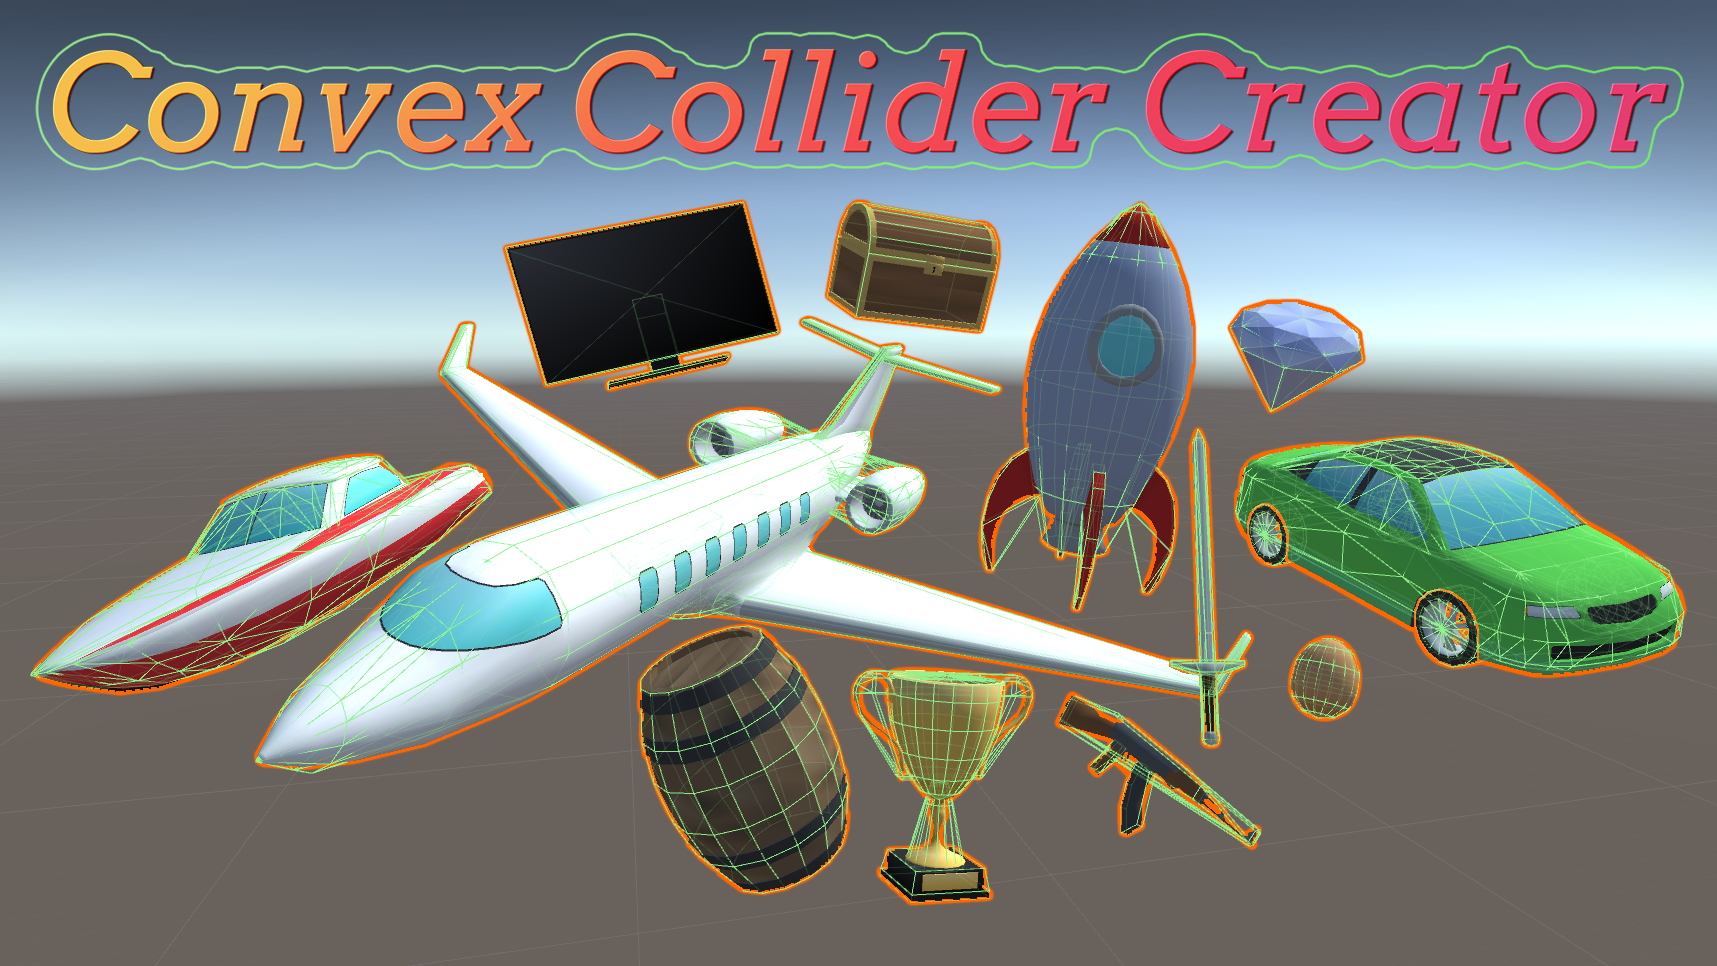 Convex Collider Creator